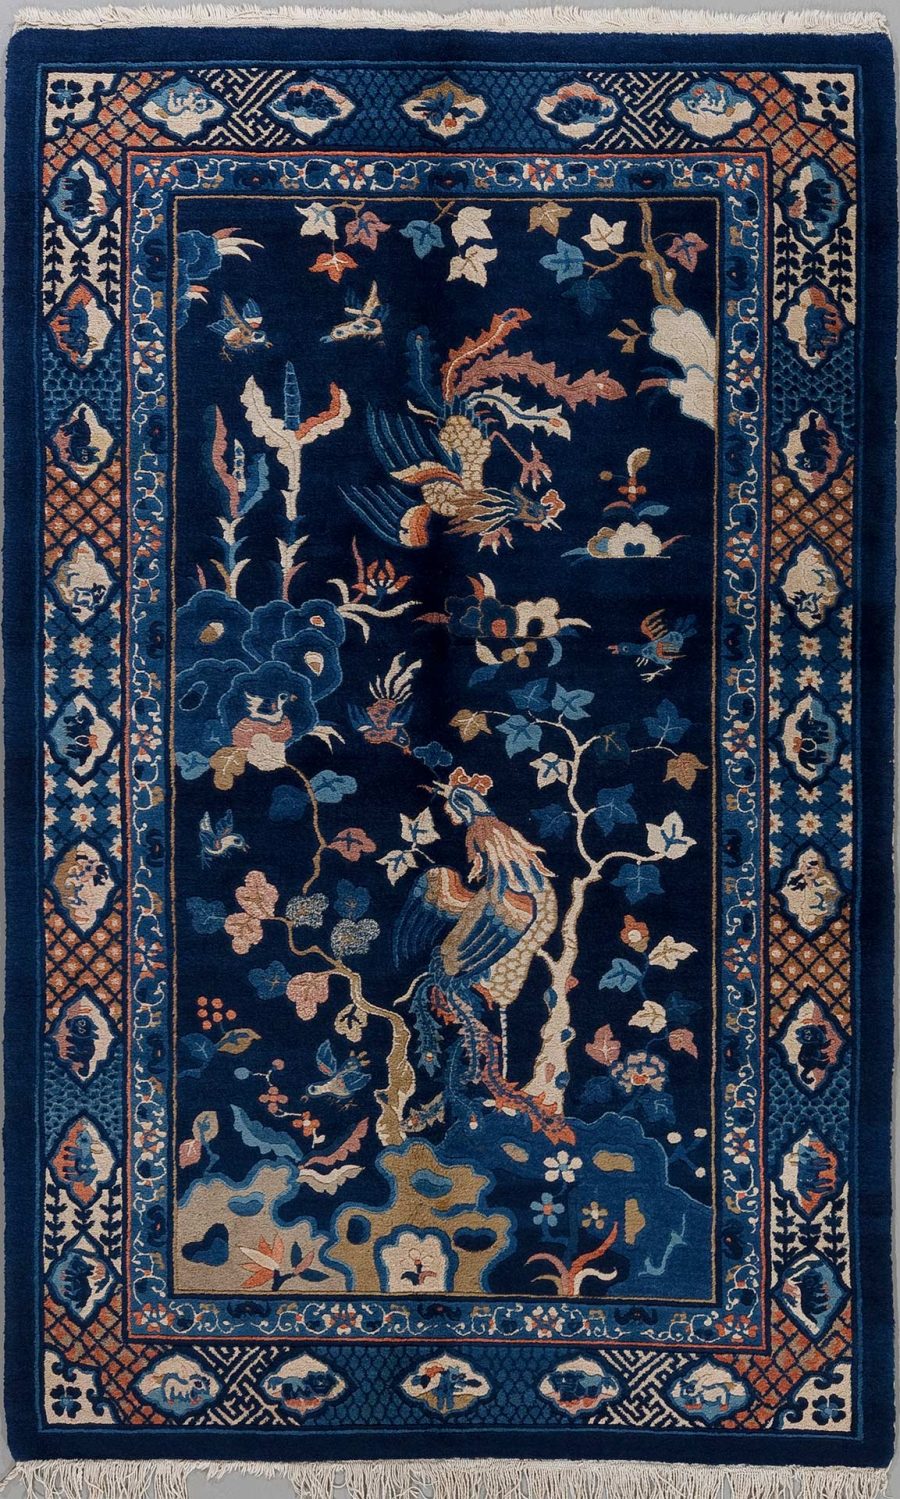 Traditioneller, handgeknüpfter Teppich mit einem dunkelblauen Hintergrund und einem detaillierten floralem und tierischem Muster, einschließlich Pfauen und verschiedenen Blumenarten, umgeben von einer dekorativen Bordüre mit geometrischen und floralen Elementen, komplettiert durch einen Fransenabschluss.